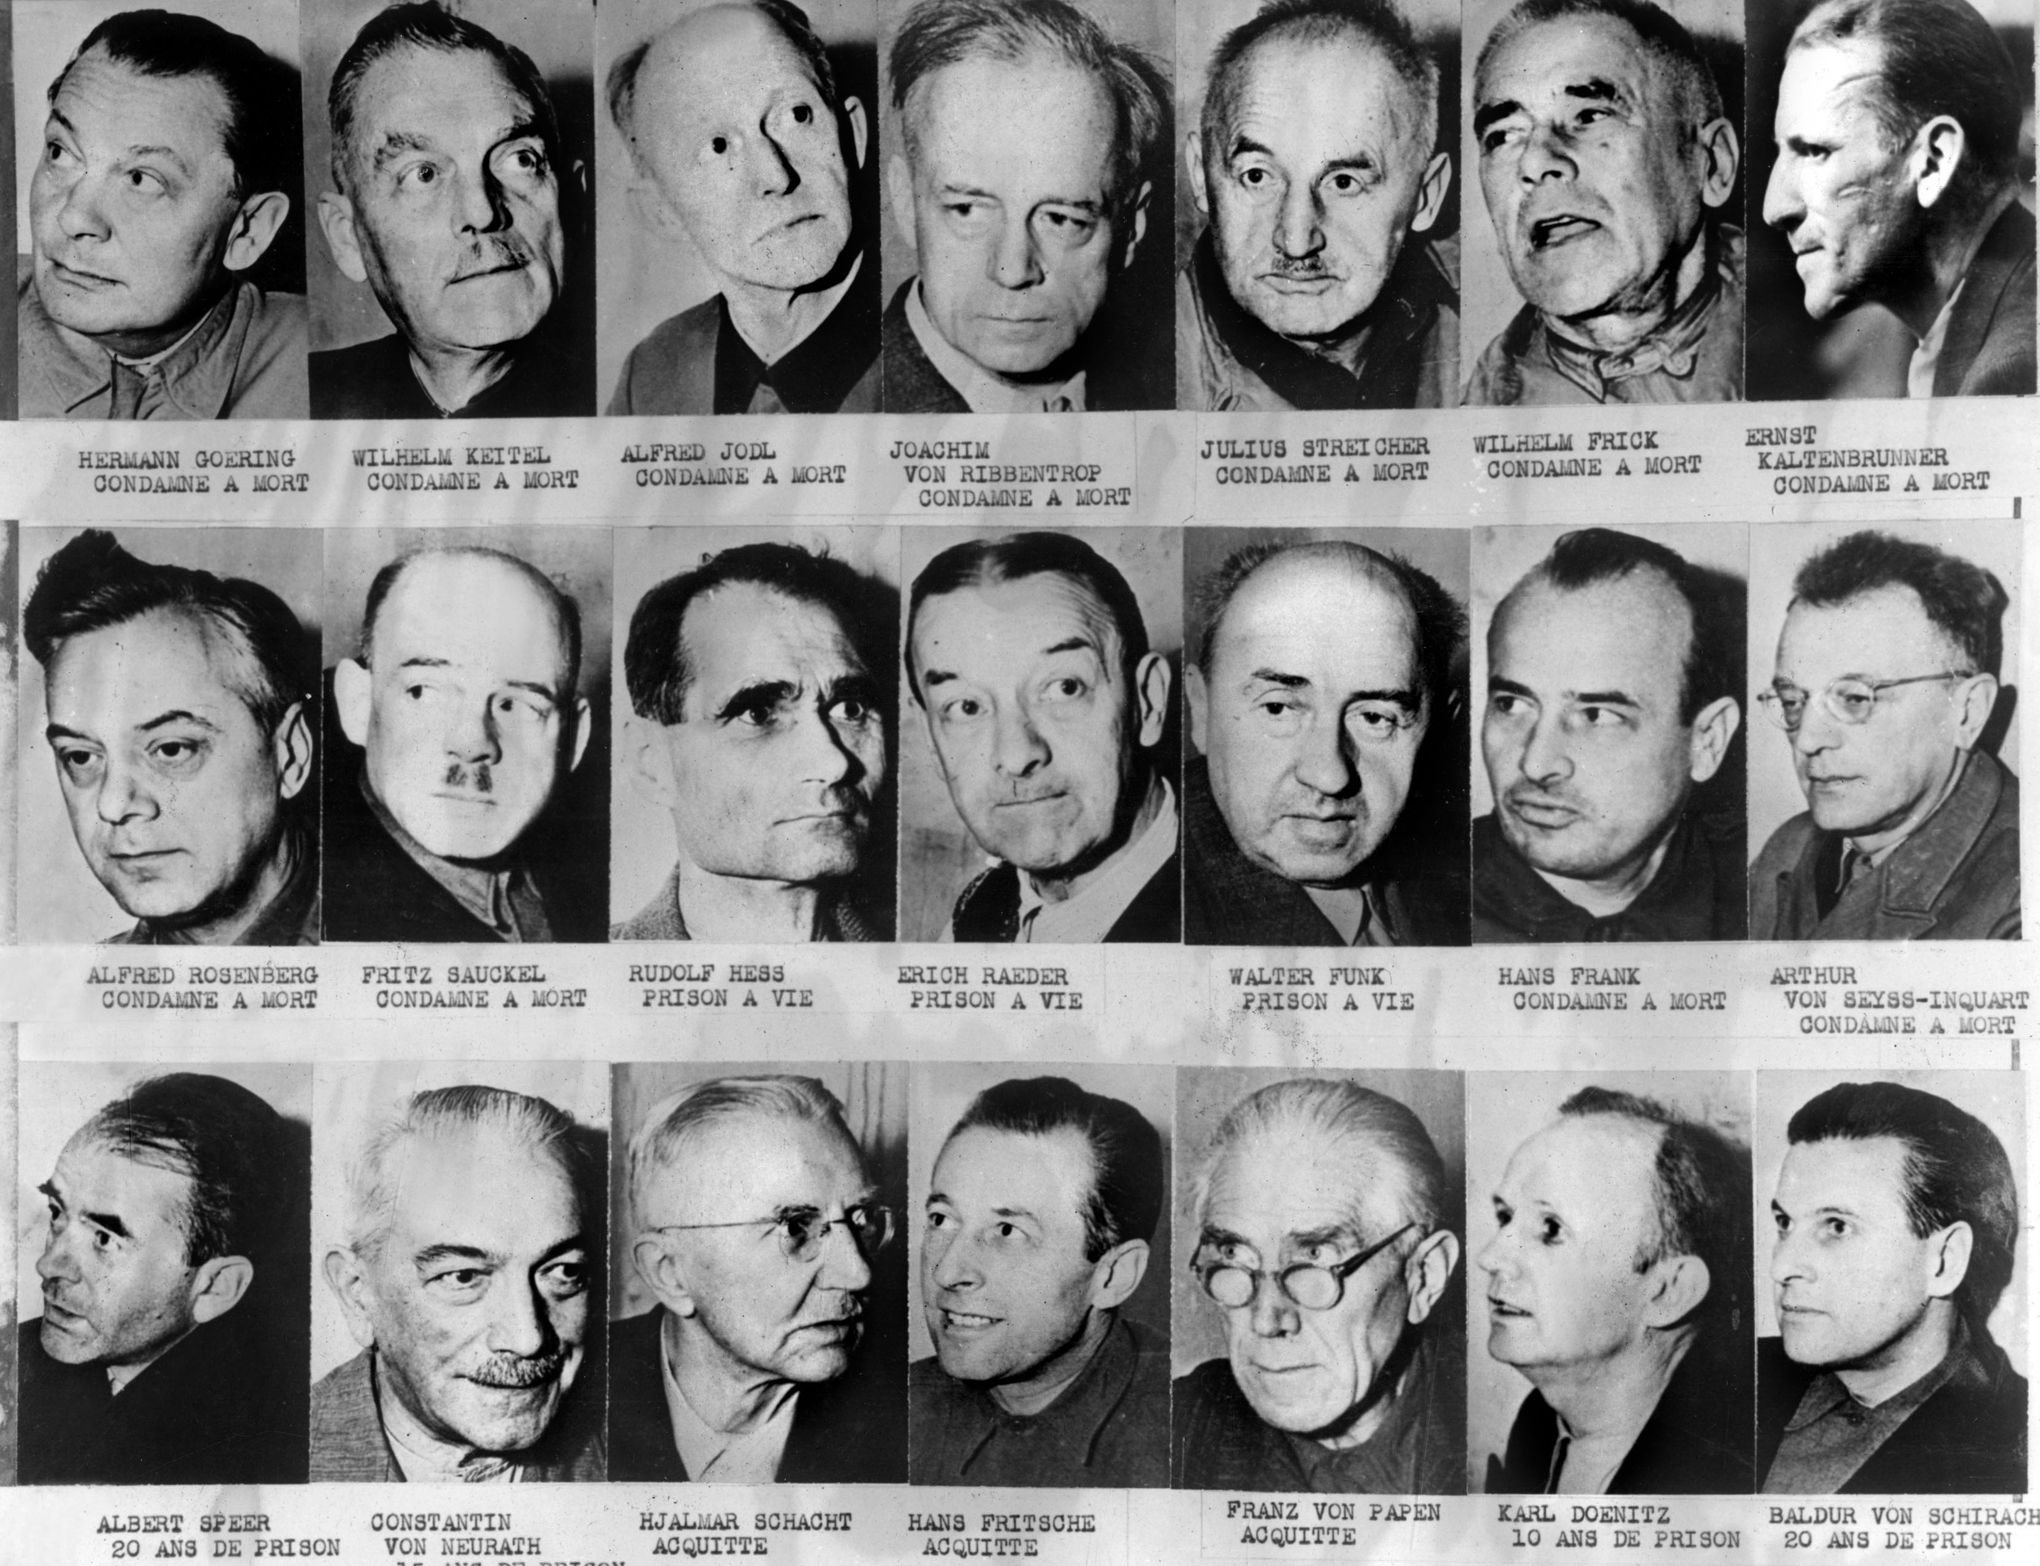  1er octobre 1946 : Verdict du procès de Nuremberg XVM13c6e774-7e4a-11e6-9c43-d957f3b3814a-590x453